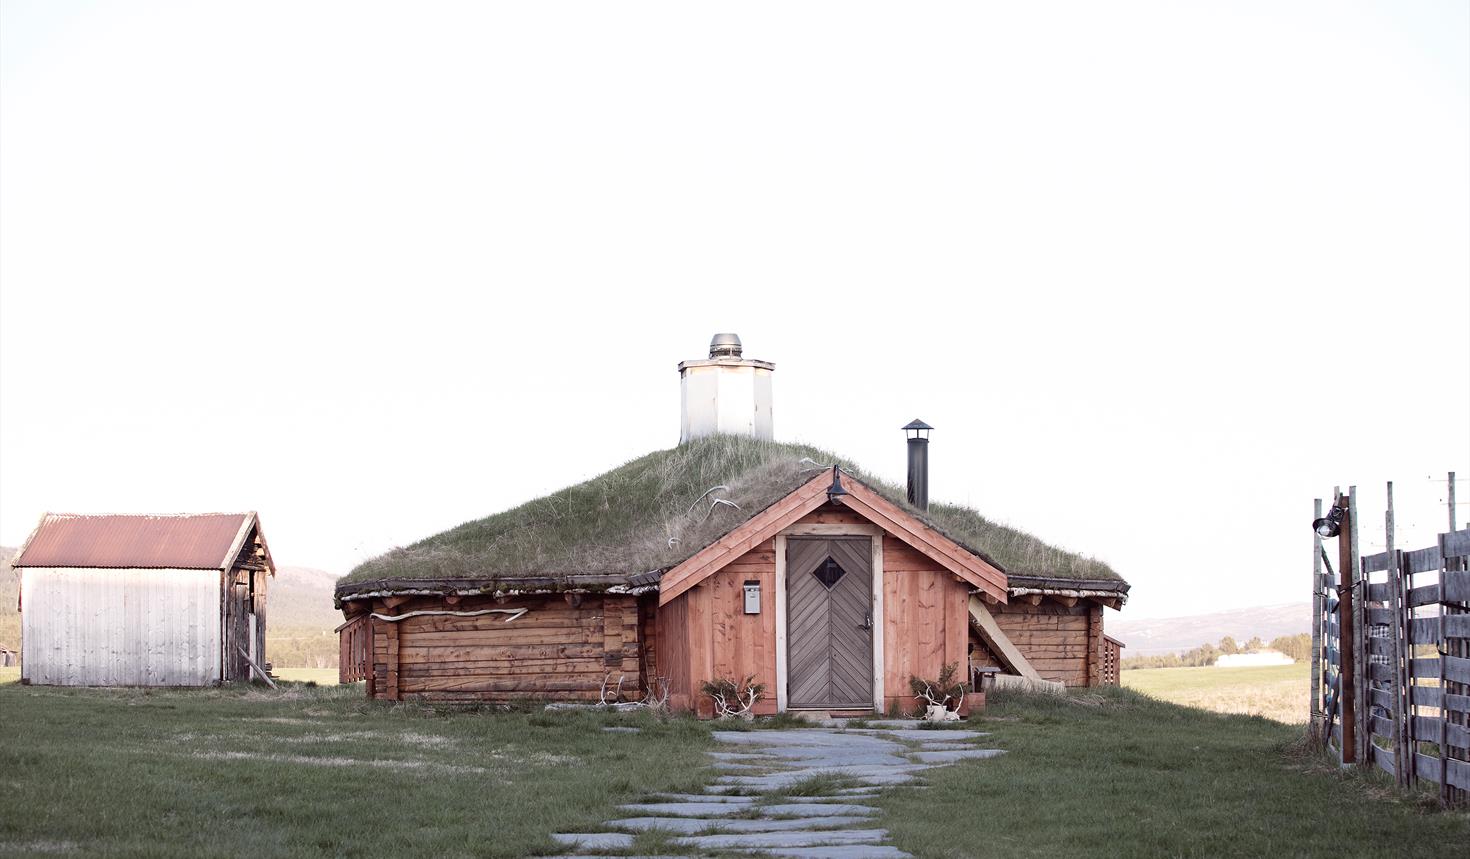 The Sami turf hut at Rørosrein